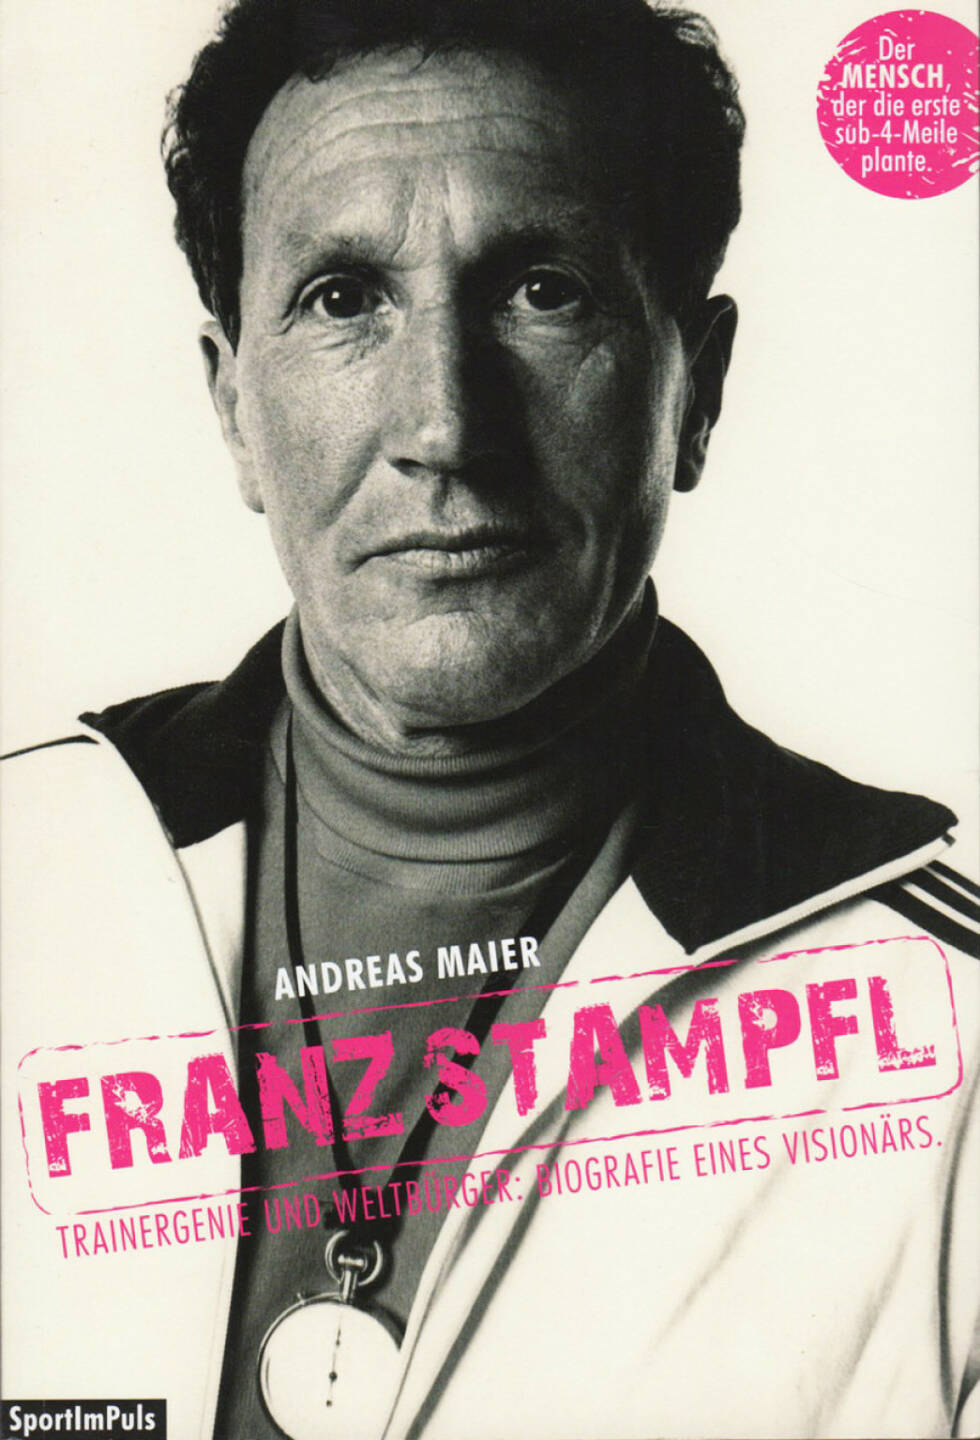 Andreas Maier - Franz Stampfl: Trainergenie und Weltbürger: Biografie eines Visionärs - http://runplugged.com/runbooks/show/andreas_maier_-_franz_stampfl_trainergenie_und_weltburger_biografie_eines_visionars